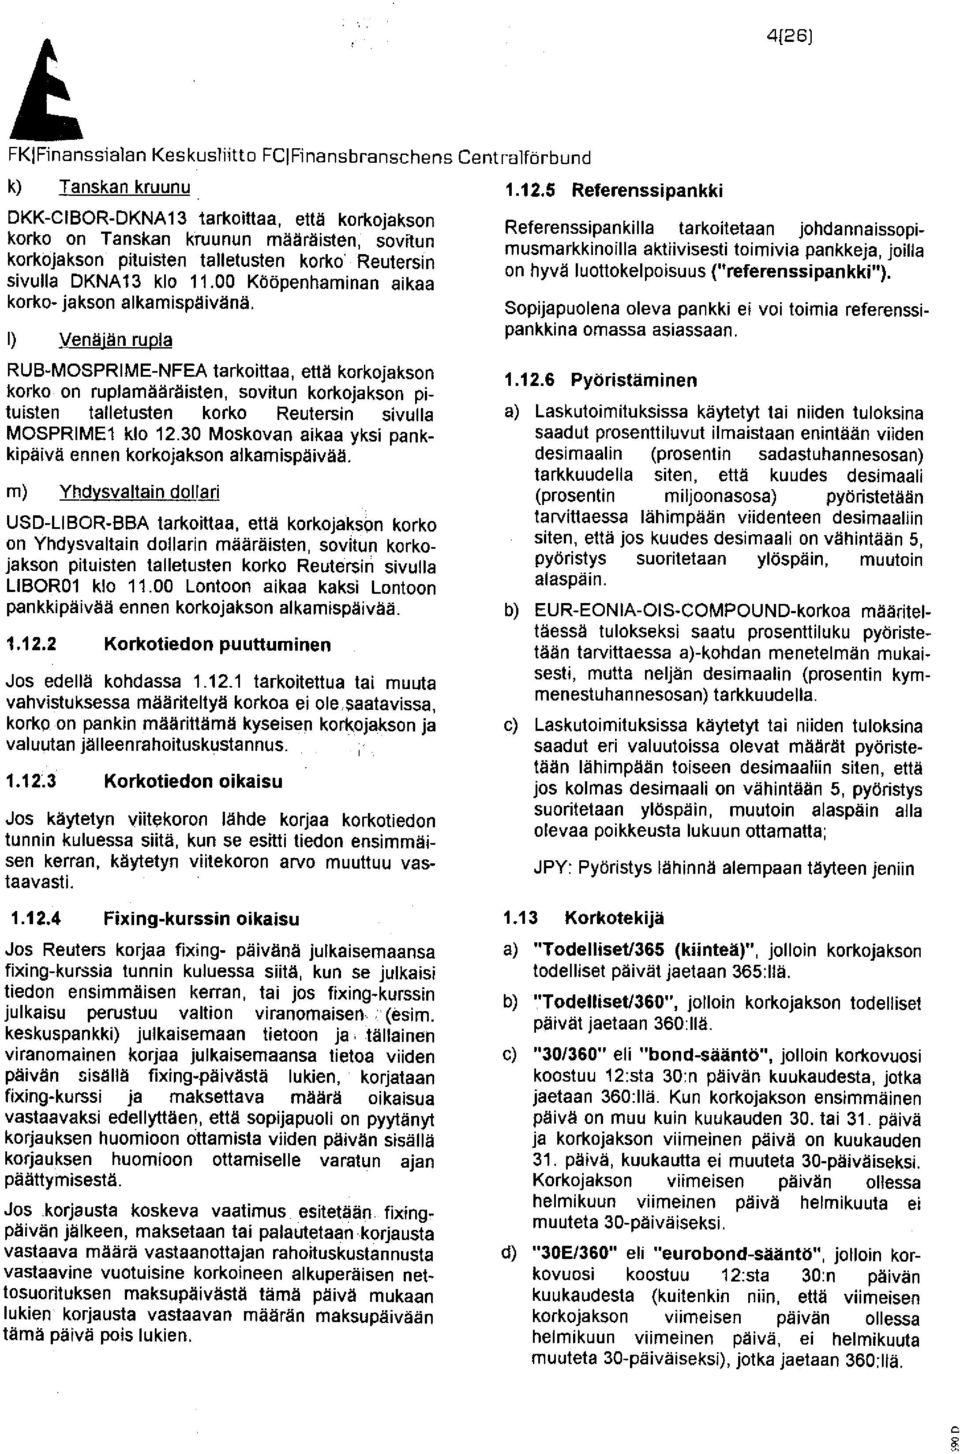 1) Venäjän rupla RUB-MOSPRIME-NFEA tarkoittaa, että korkojakson korko on ruplamääräisten, sovitun korkojakson pituisten talletusten korko Reutersin sivulla MOSPRIME1 klo 12.